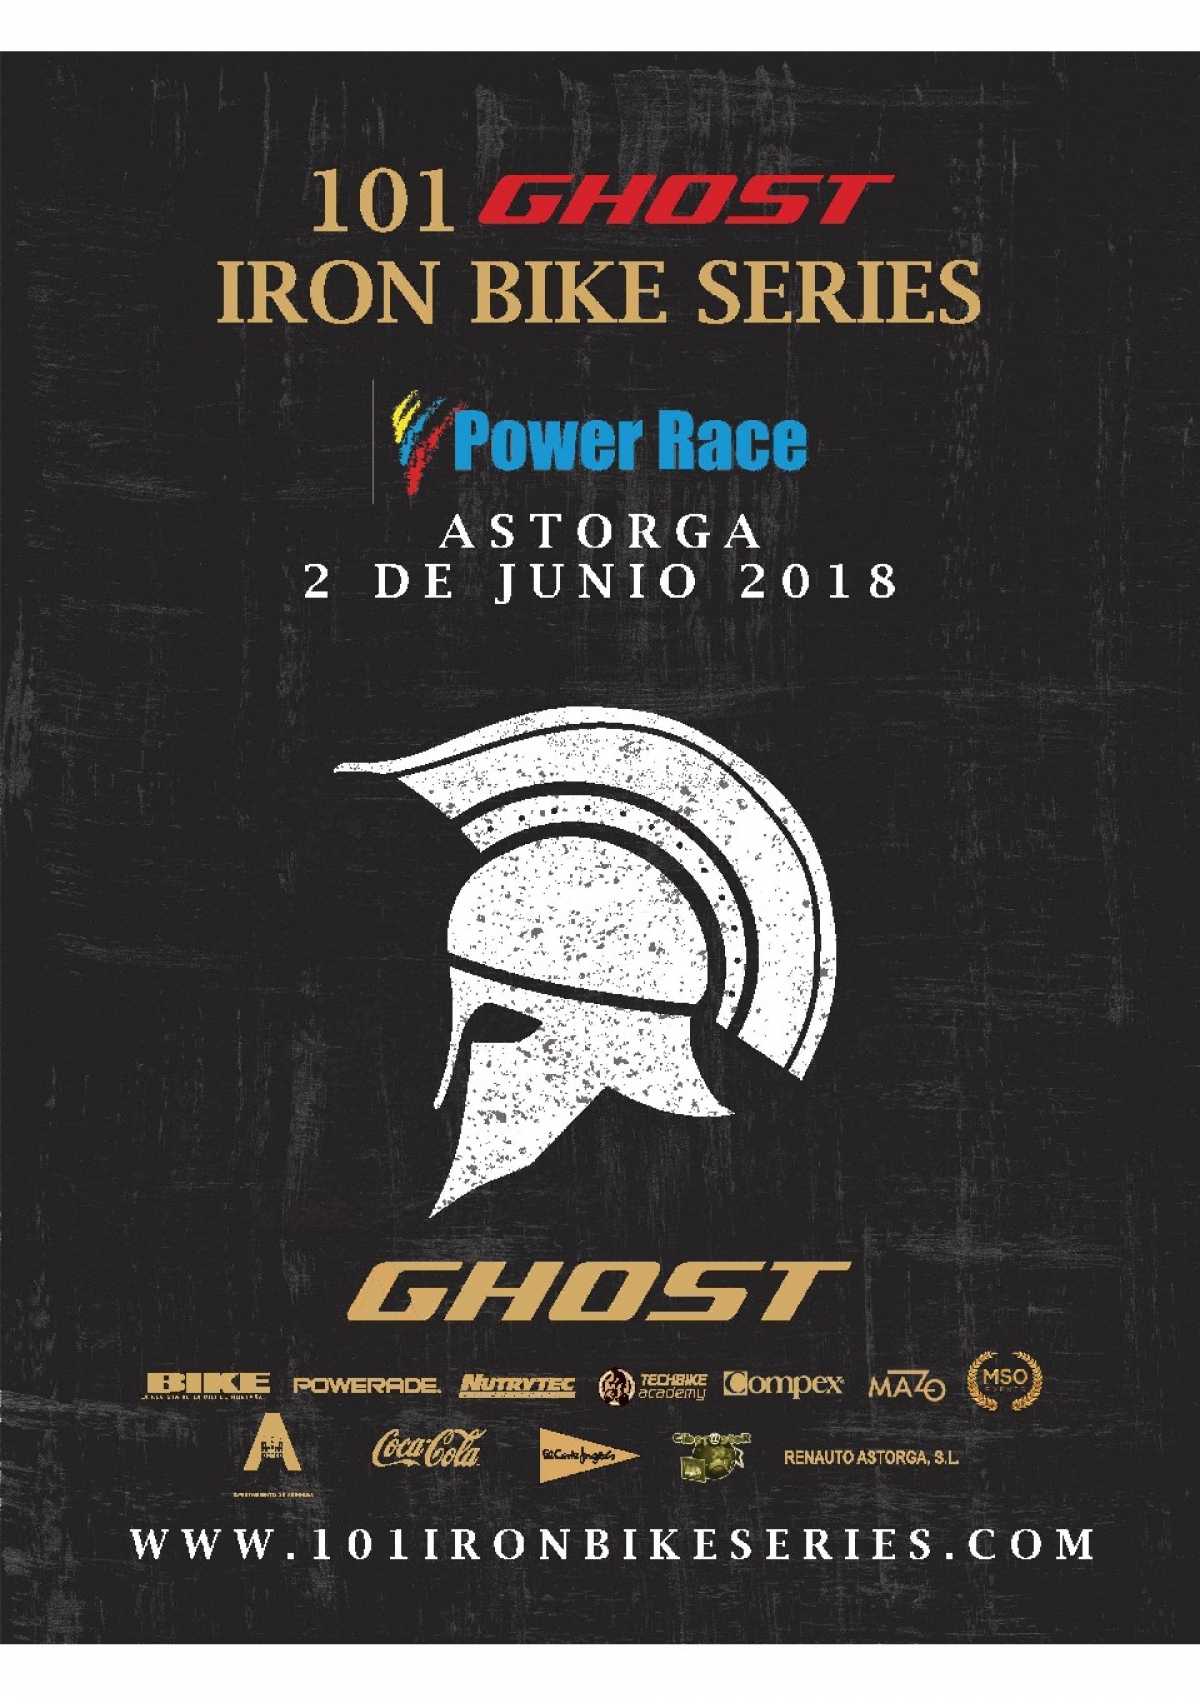 Abiertas inscripciones de la 101 Power Race Ghost Astorga 2018